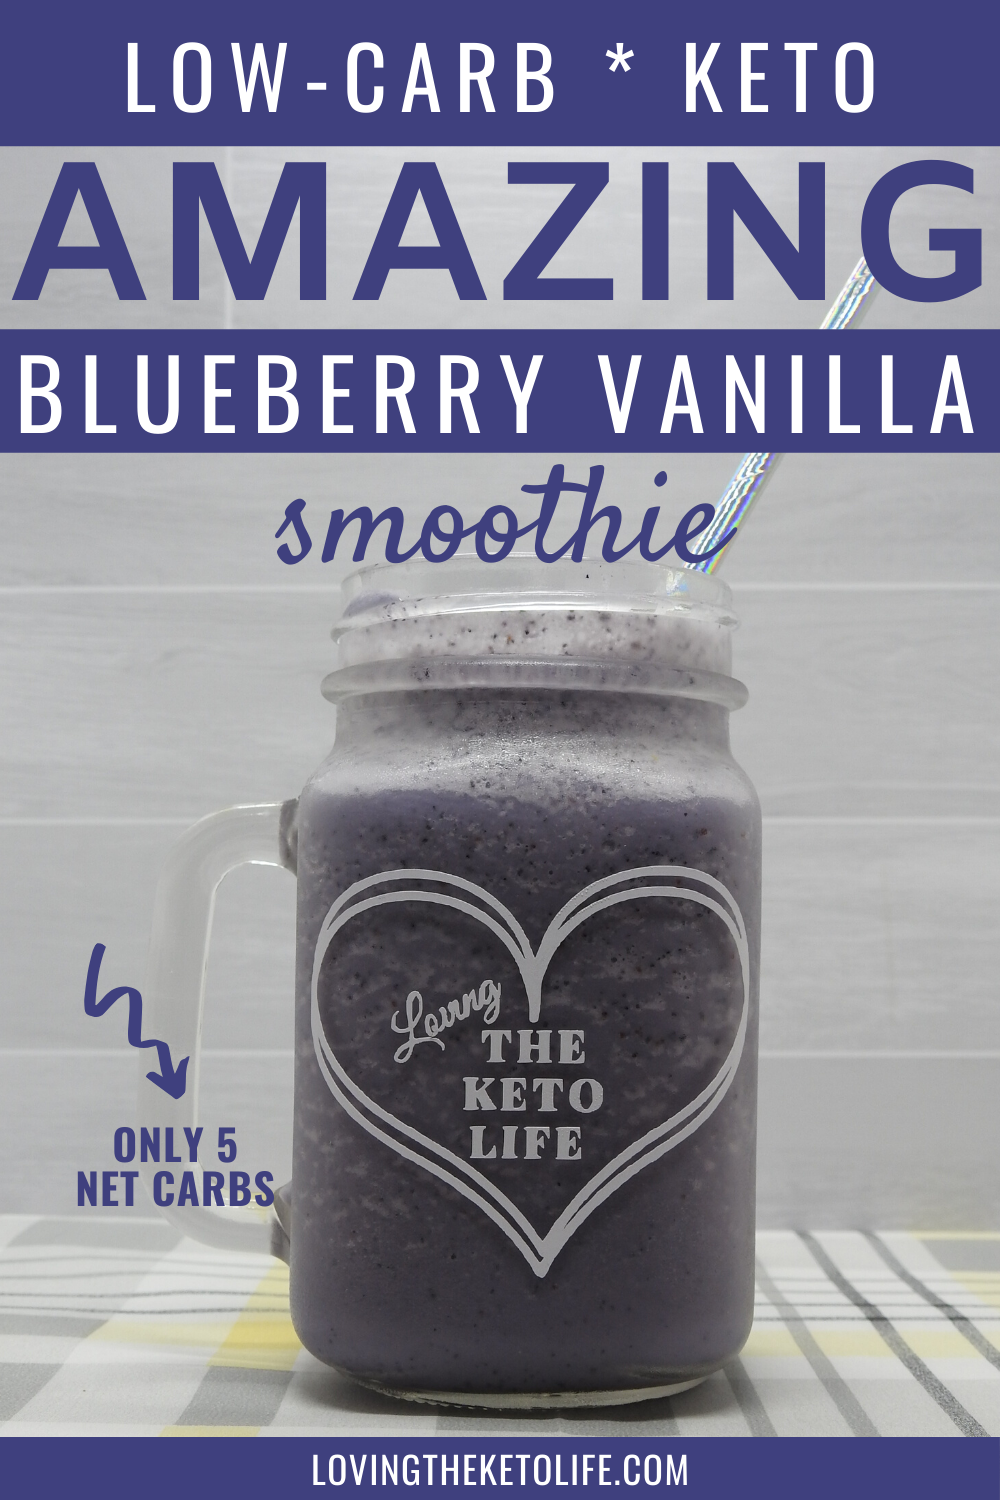 Keto Blueberry Vanilla Smoothie